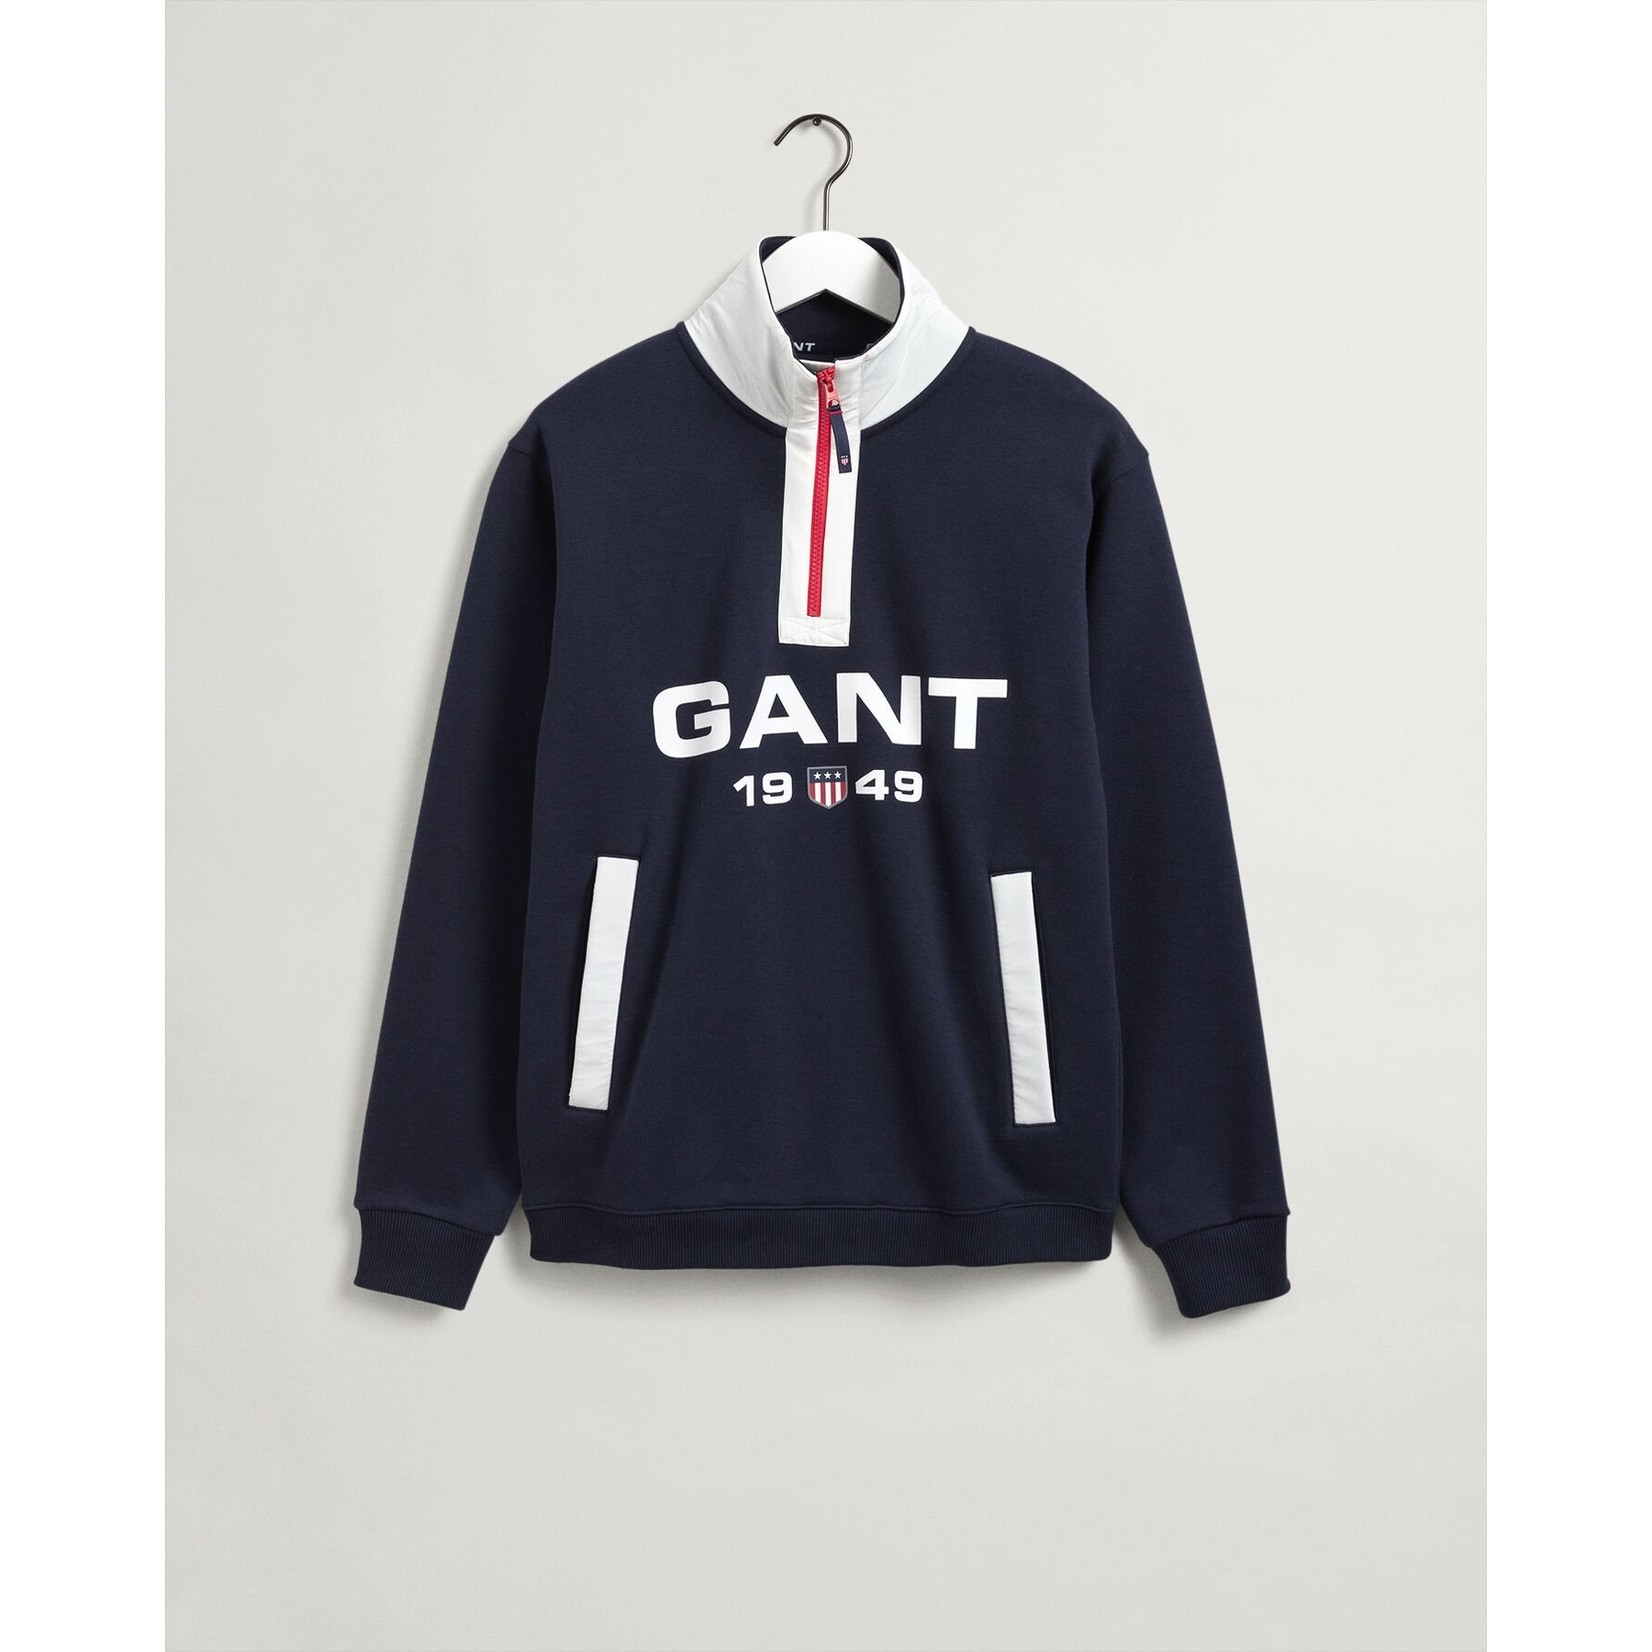 GANT retro logo sweatshirt met korte rits grijs